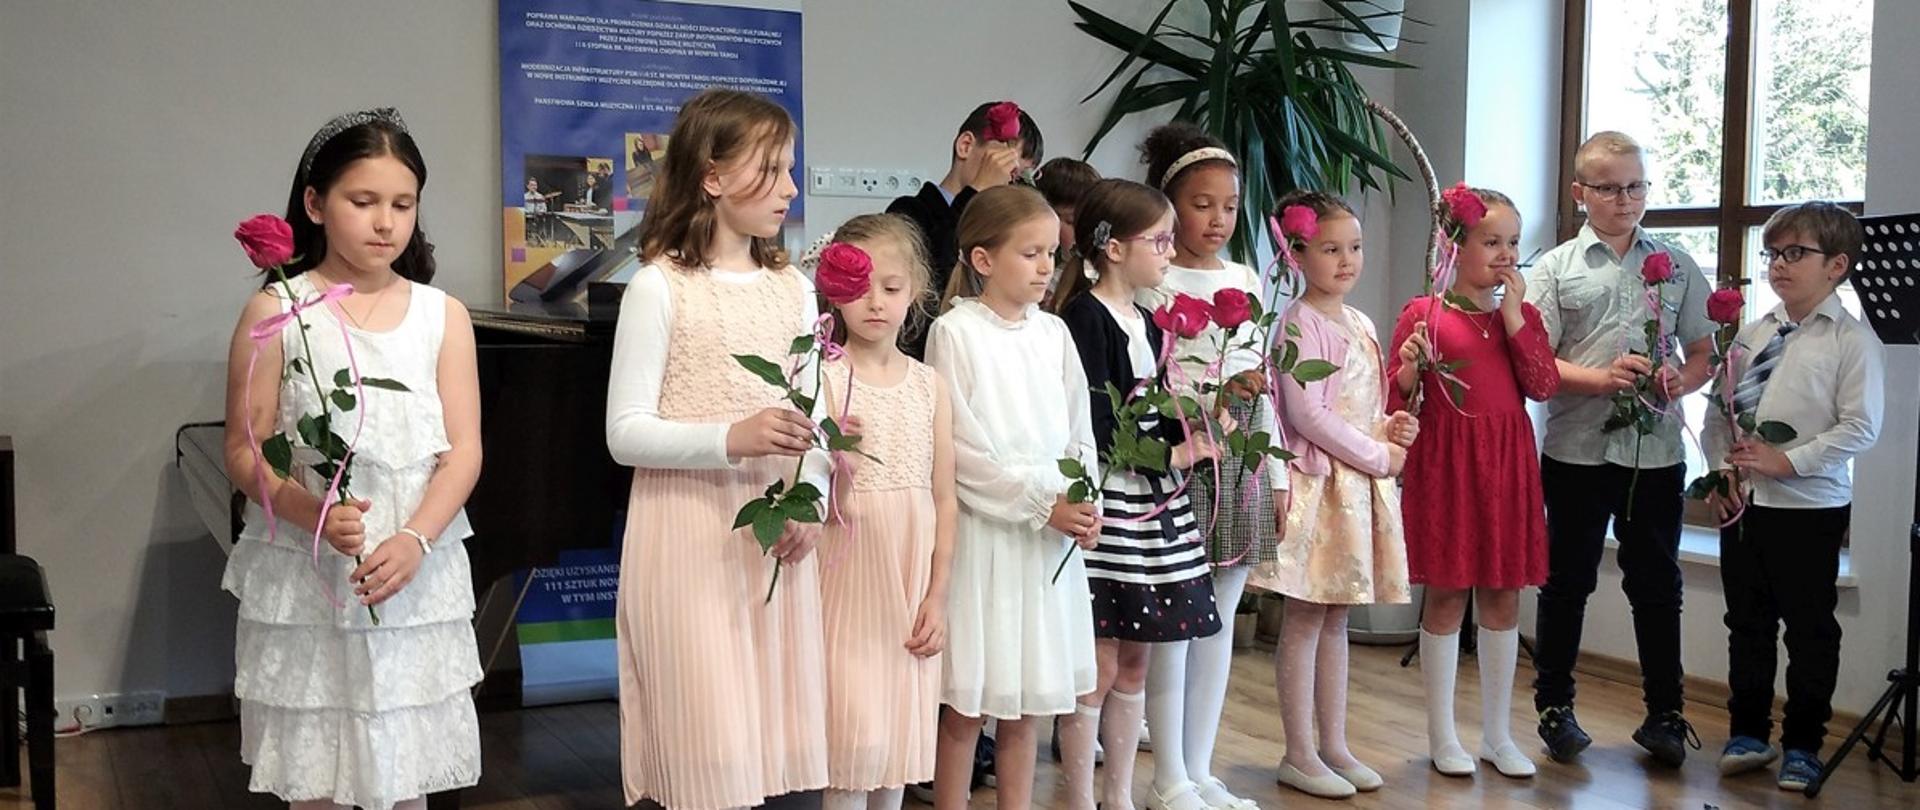 Na scenie sali koncertowej stoją najmłodsi uczniowie w rzędzie trzymają w dłoni róże. Za nimi fortepian, ława fortepianowa, baner unijny oraz palma doniczkowa. Po prawej stronie okno i jeden pulpit